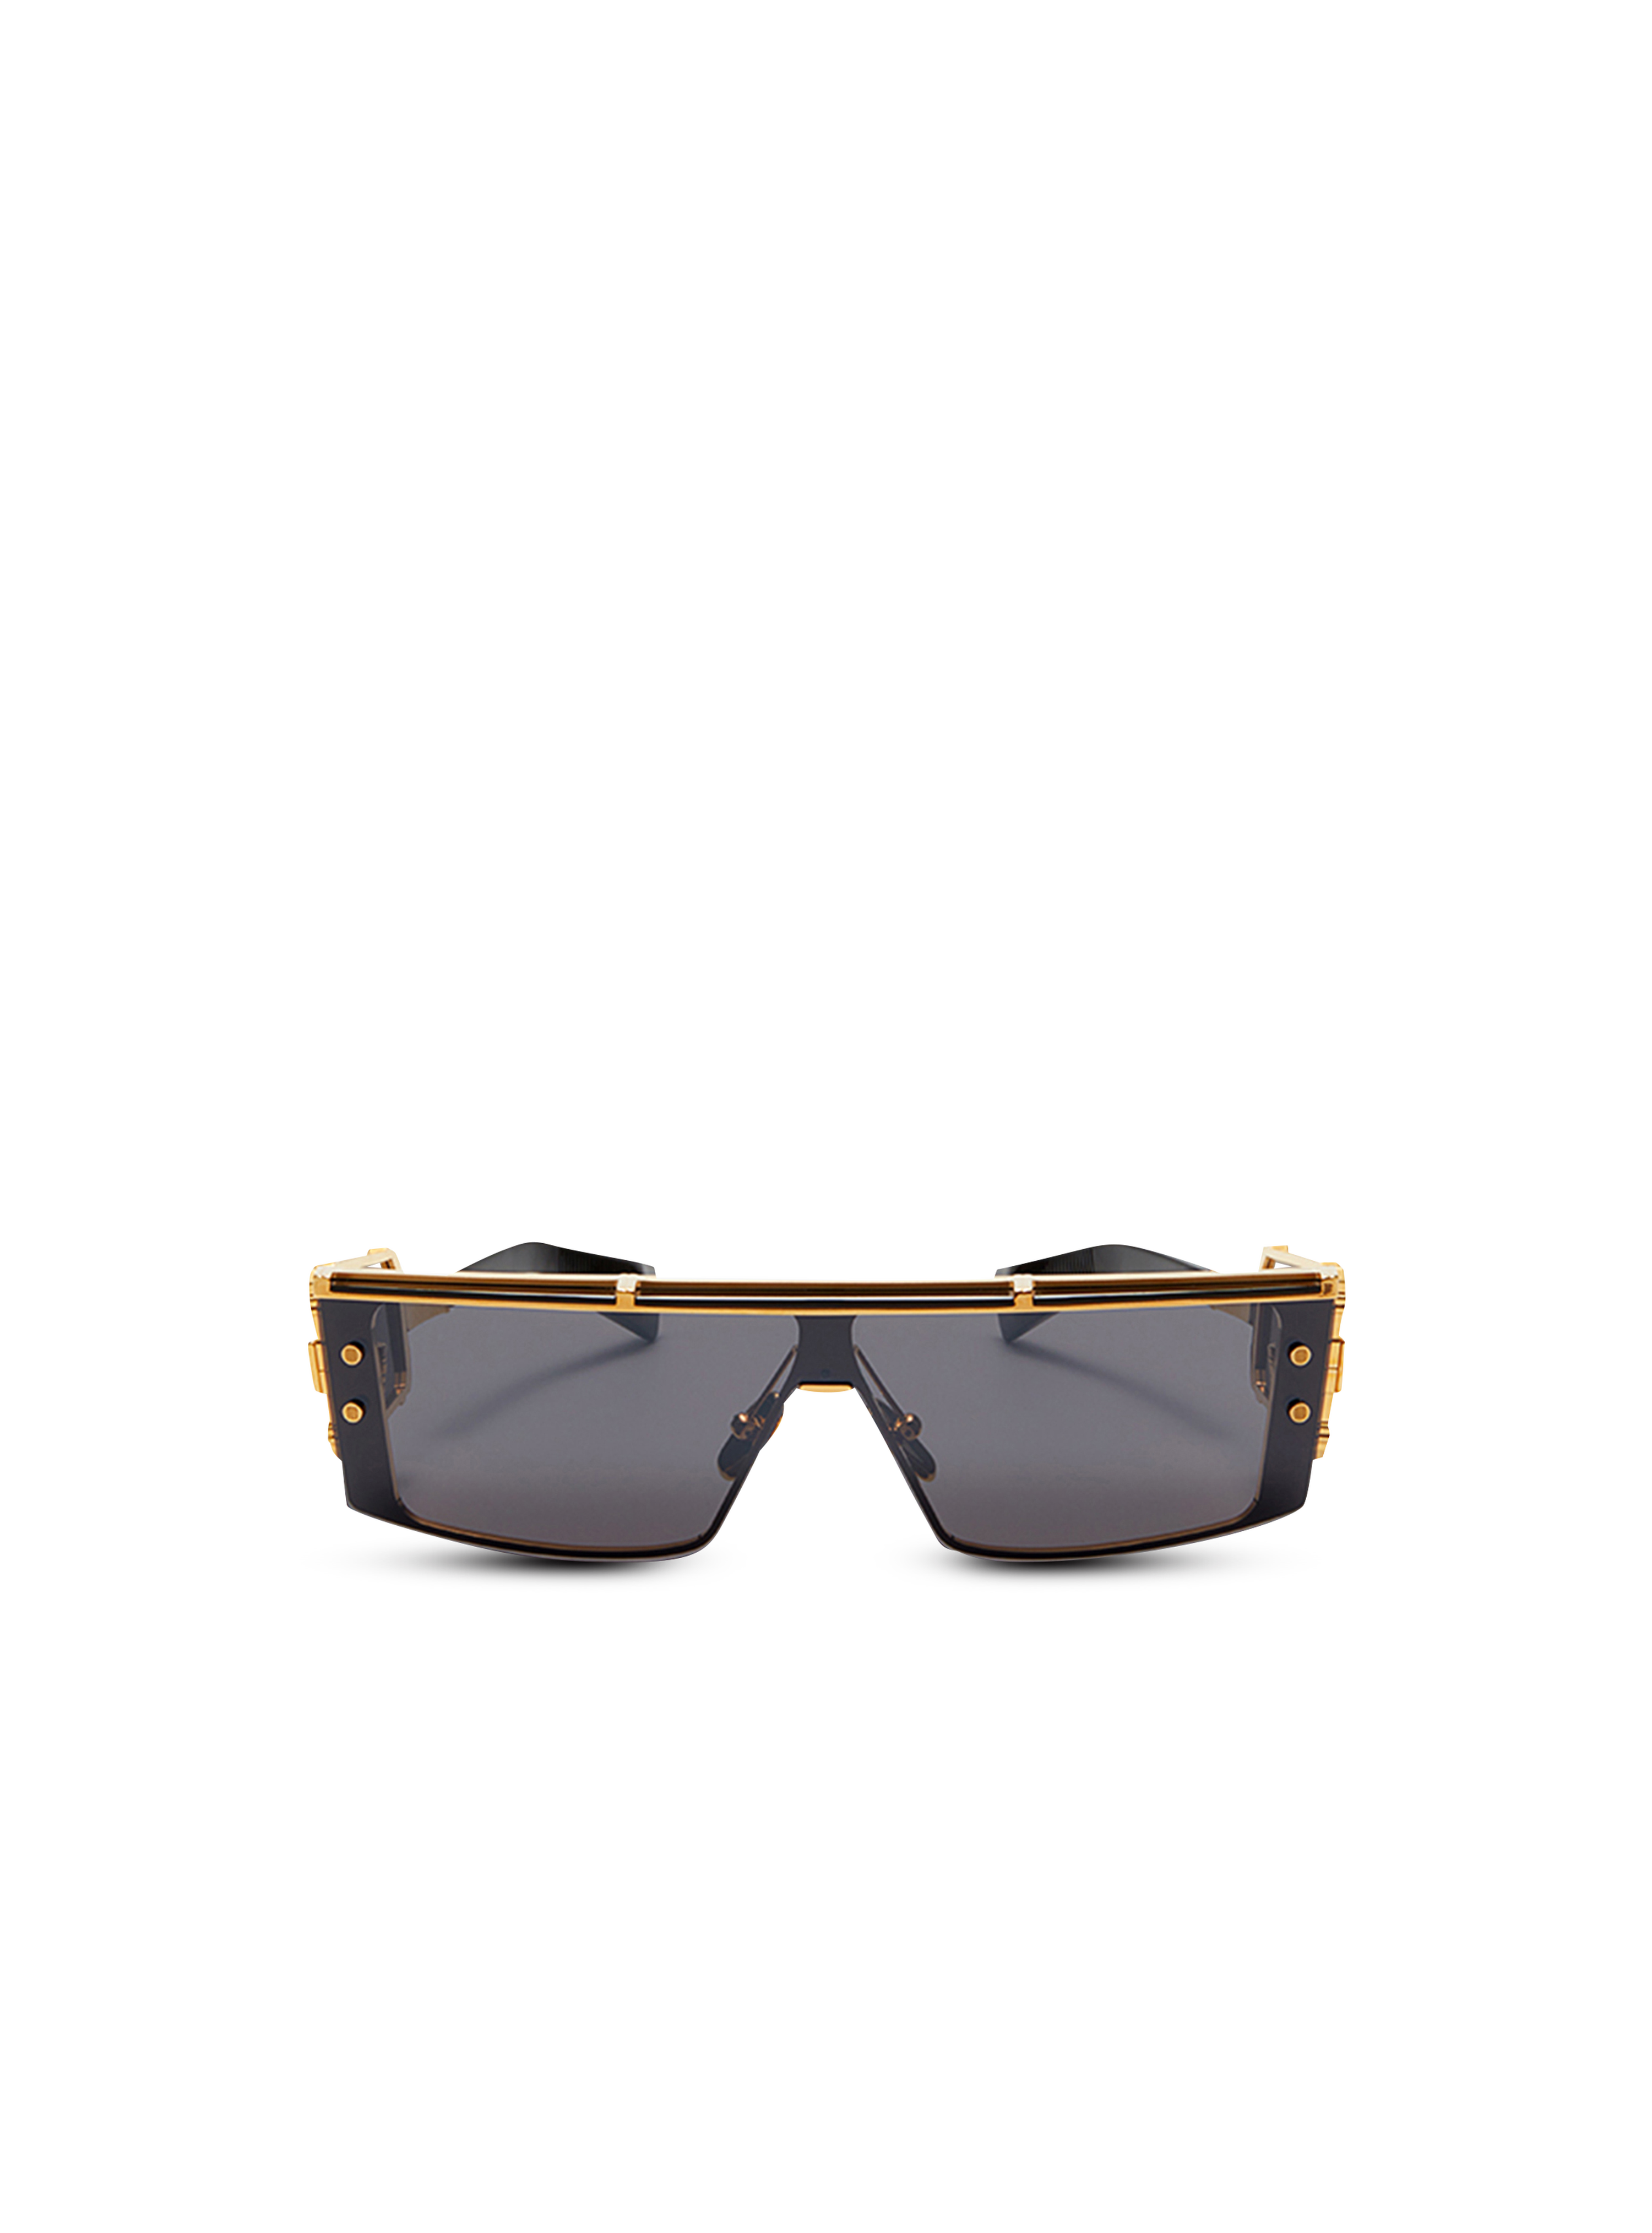 Shield-Sonnenbrille Wonder Boy III aus Titan, schwarz